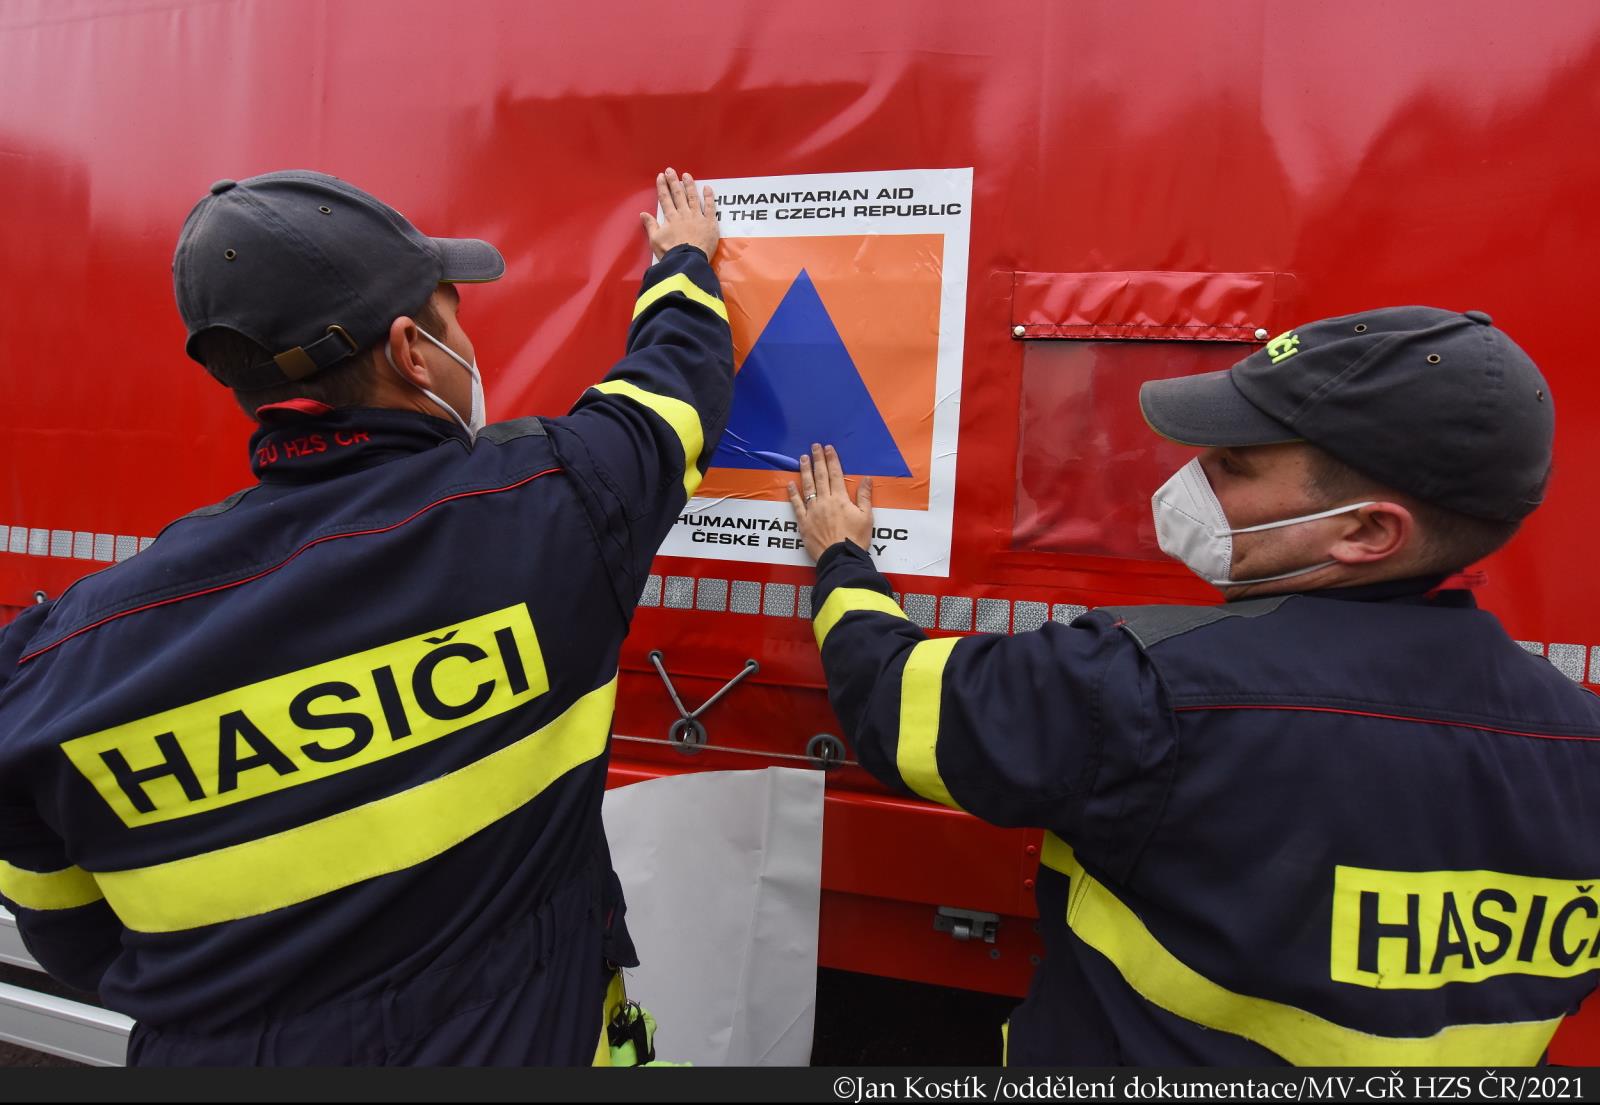 HP Lotyšsko_hasiči označují vůz znakem humanitární pomoci (2).JPG